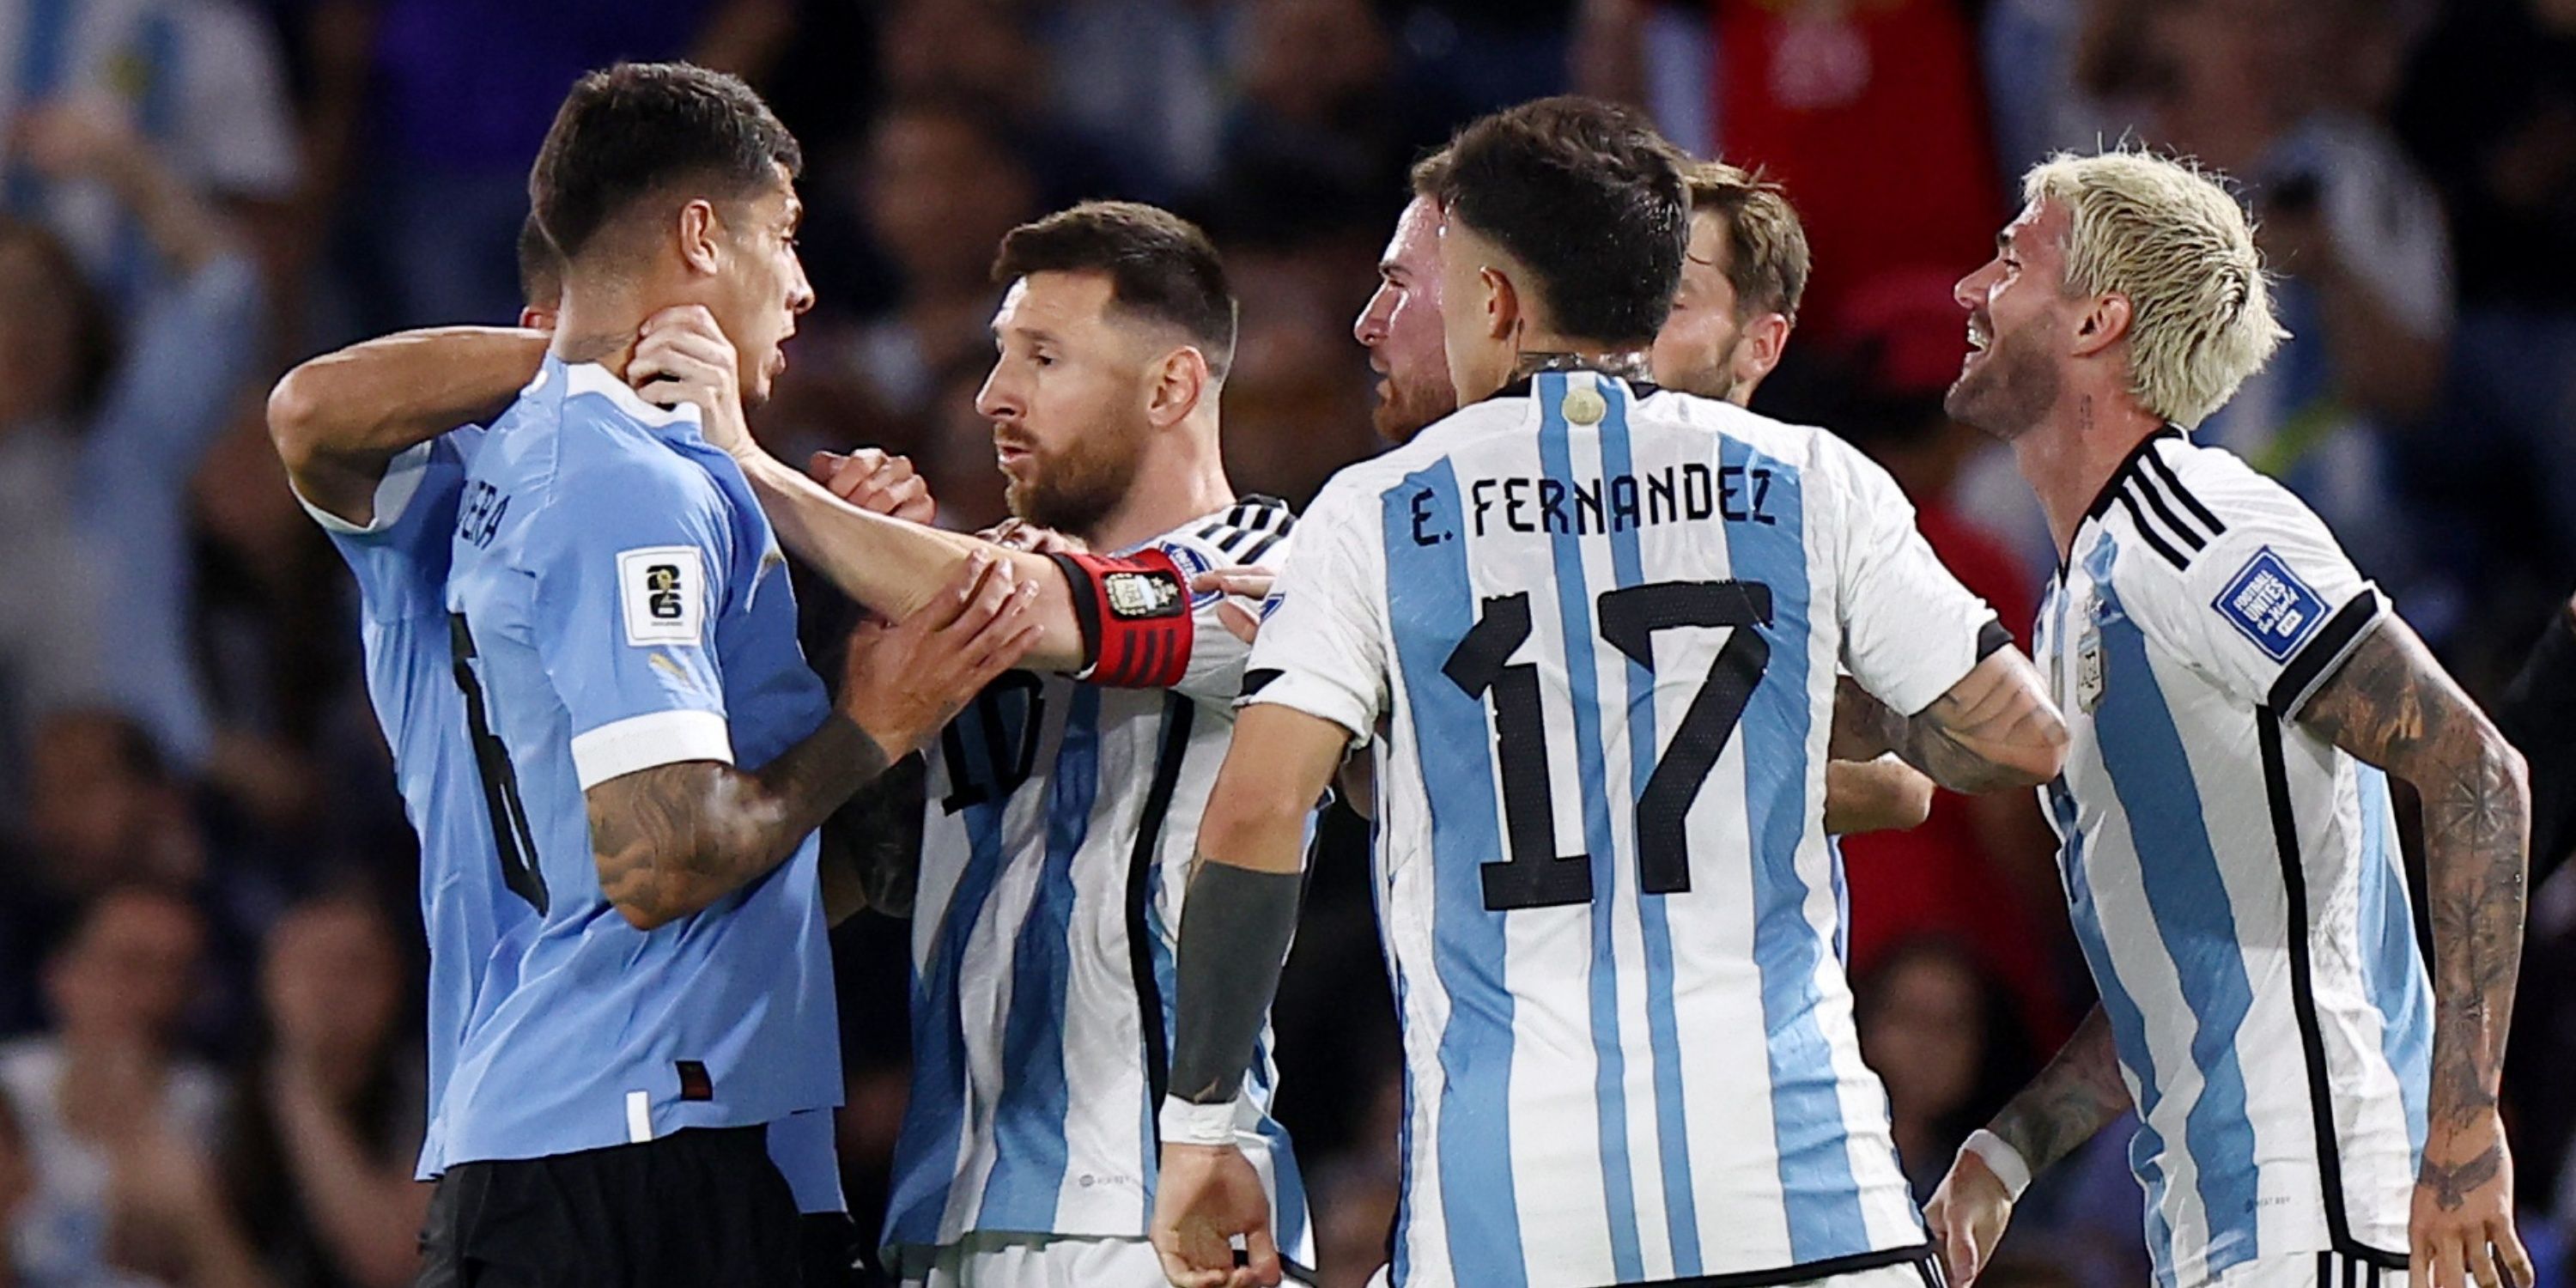 Argentina's Lionel Messi clashes with Uruguay's Mathias Olivera